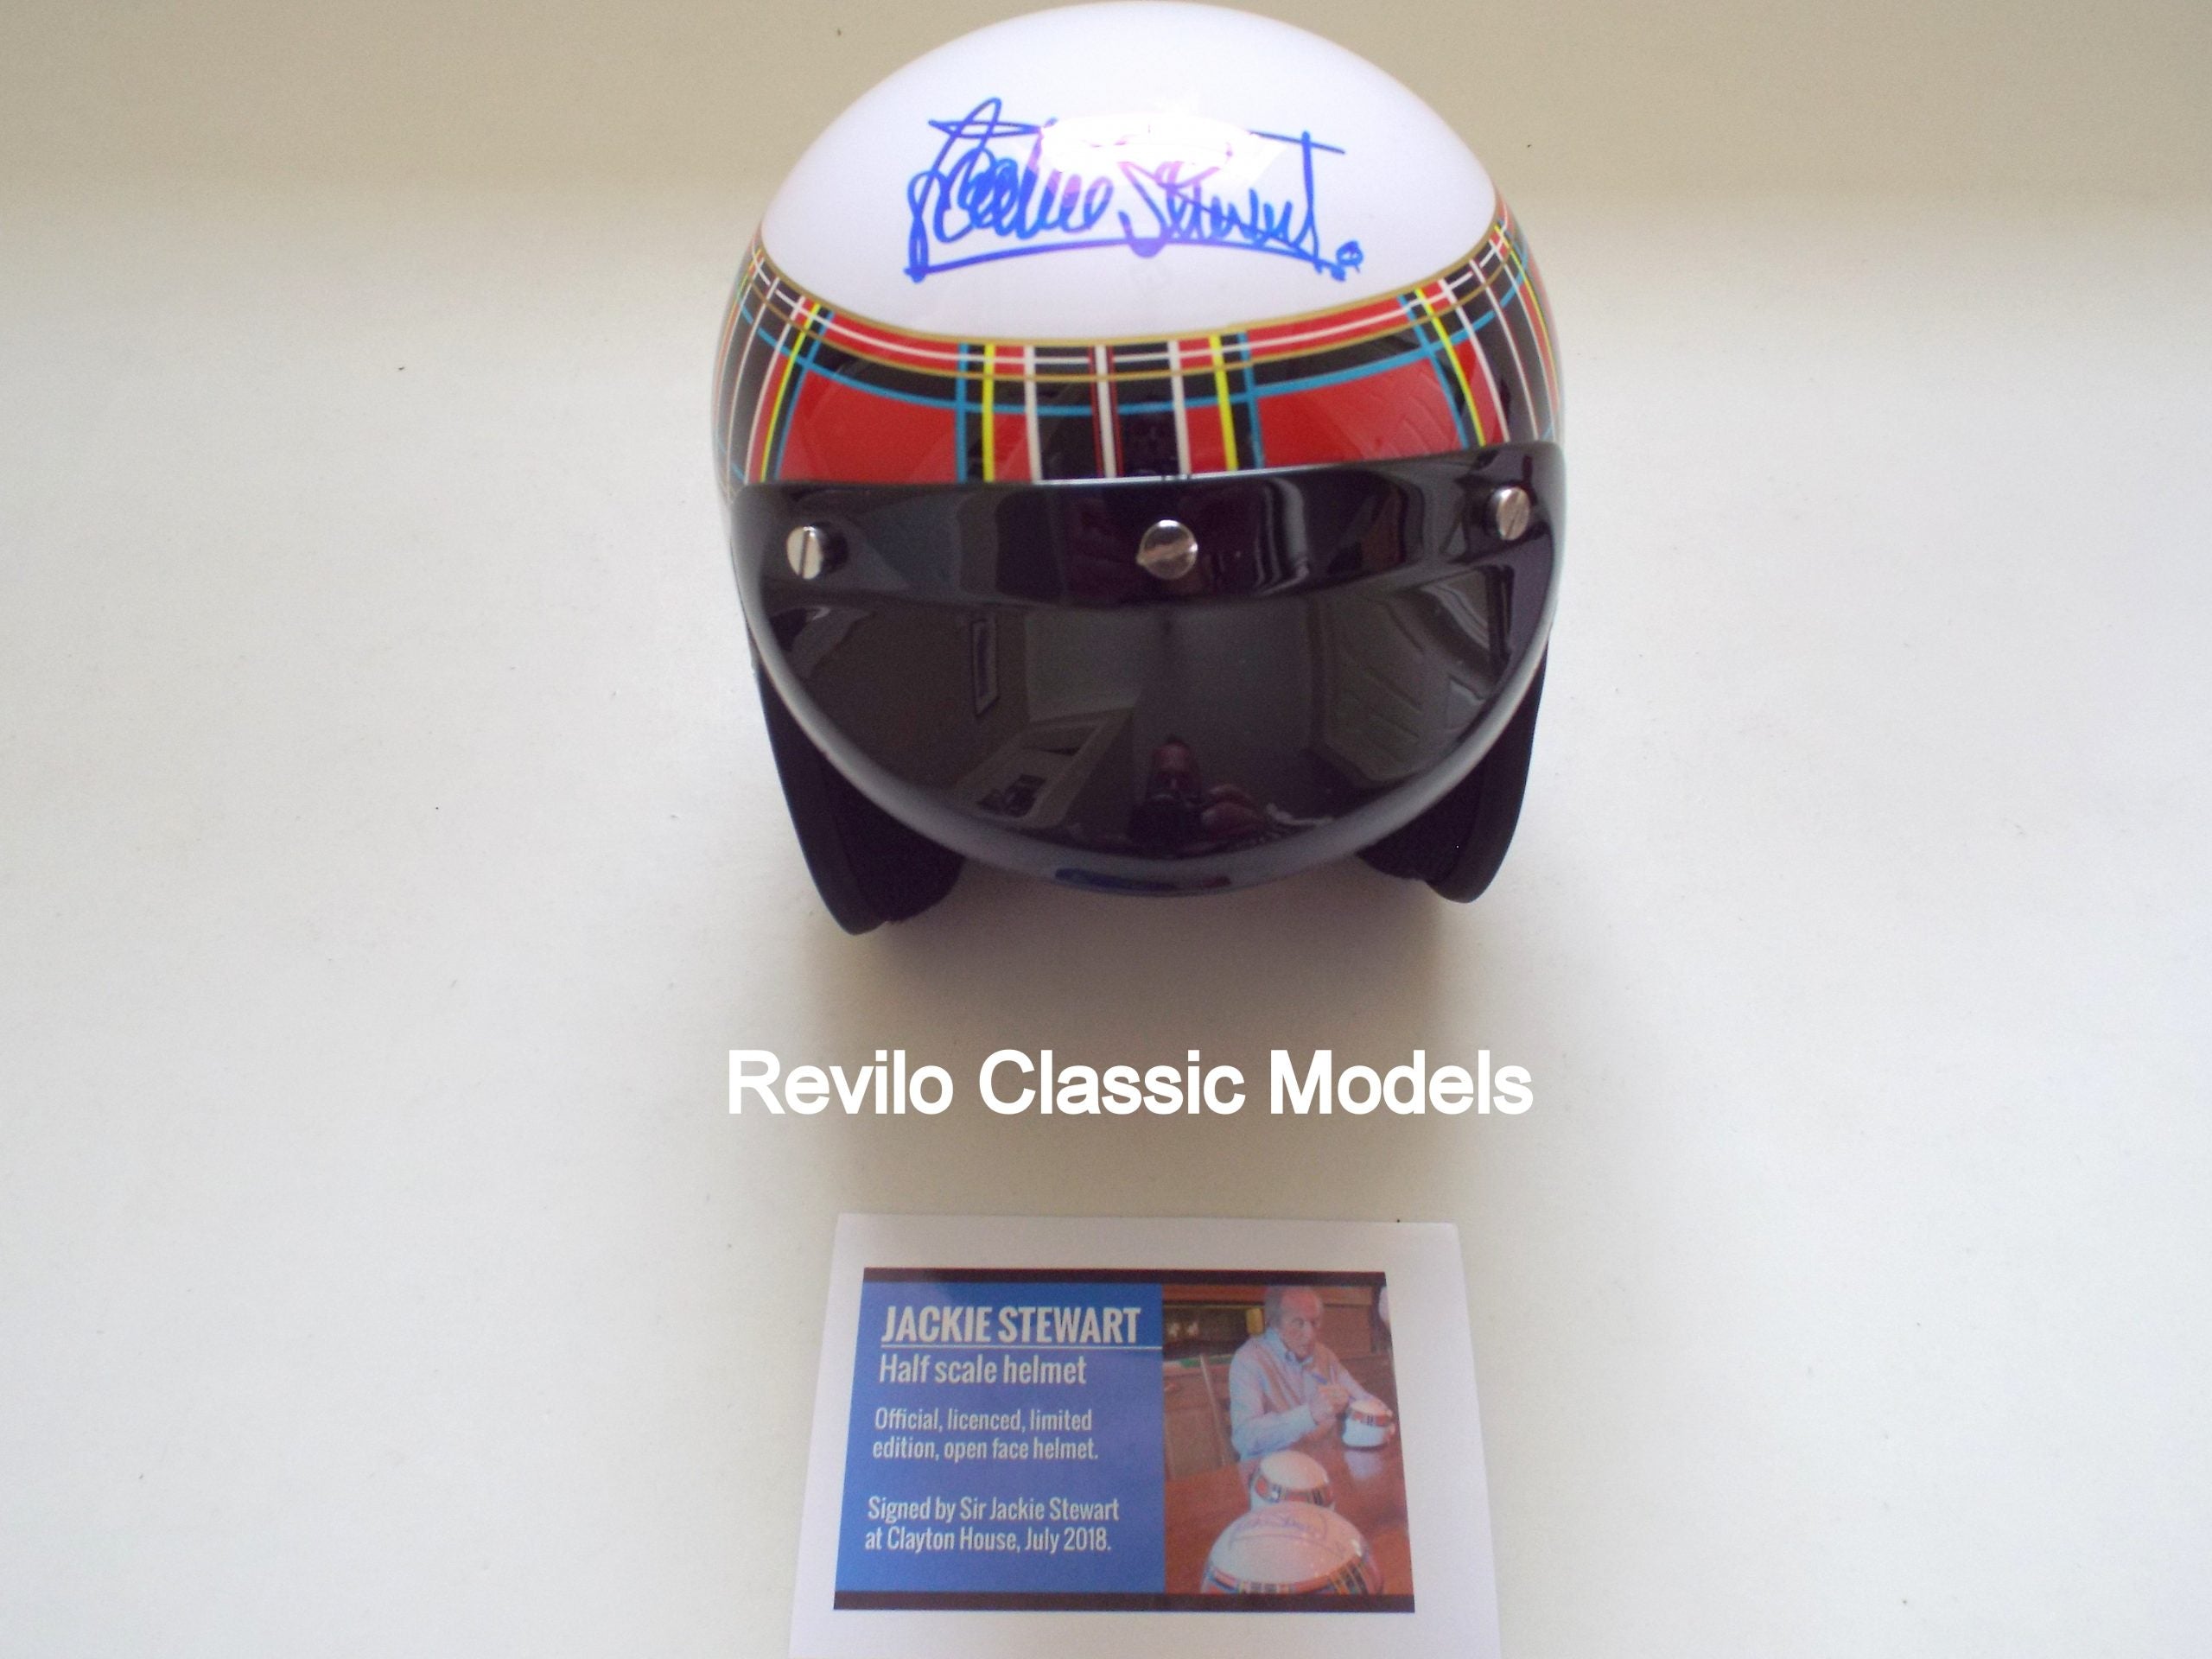 Jackie Stewart, 1:2 half scale helmet